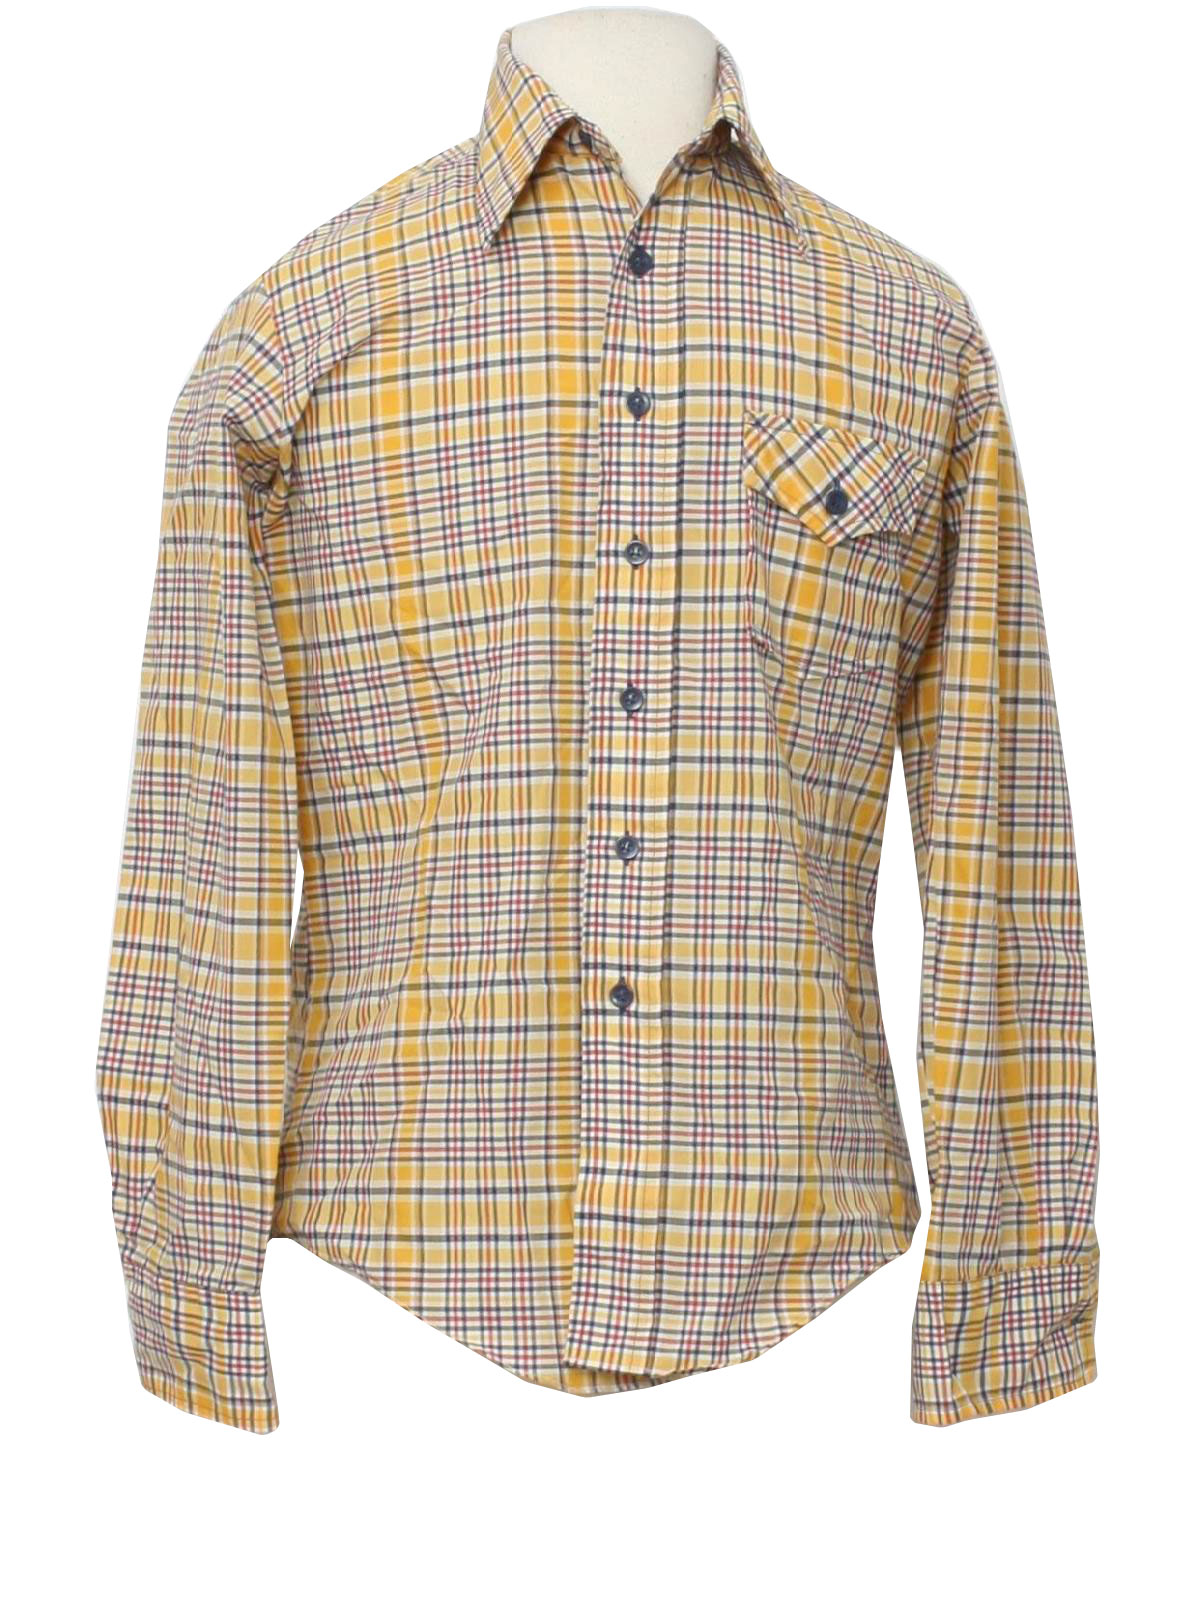 Retro Seventies Shirt: 70s -Keen Shirts- Mens shaded yellow, white ...